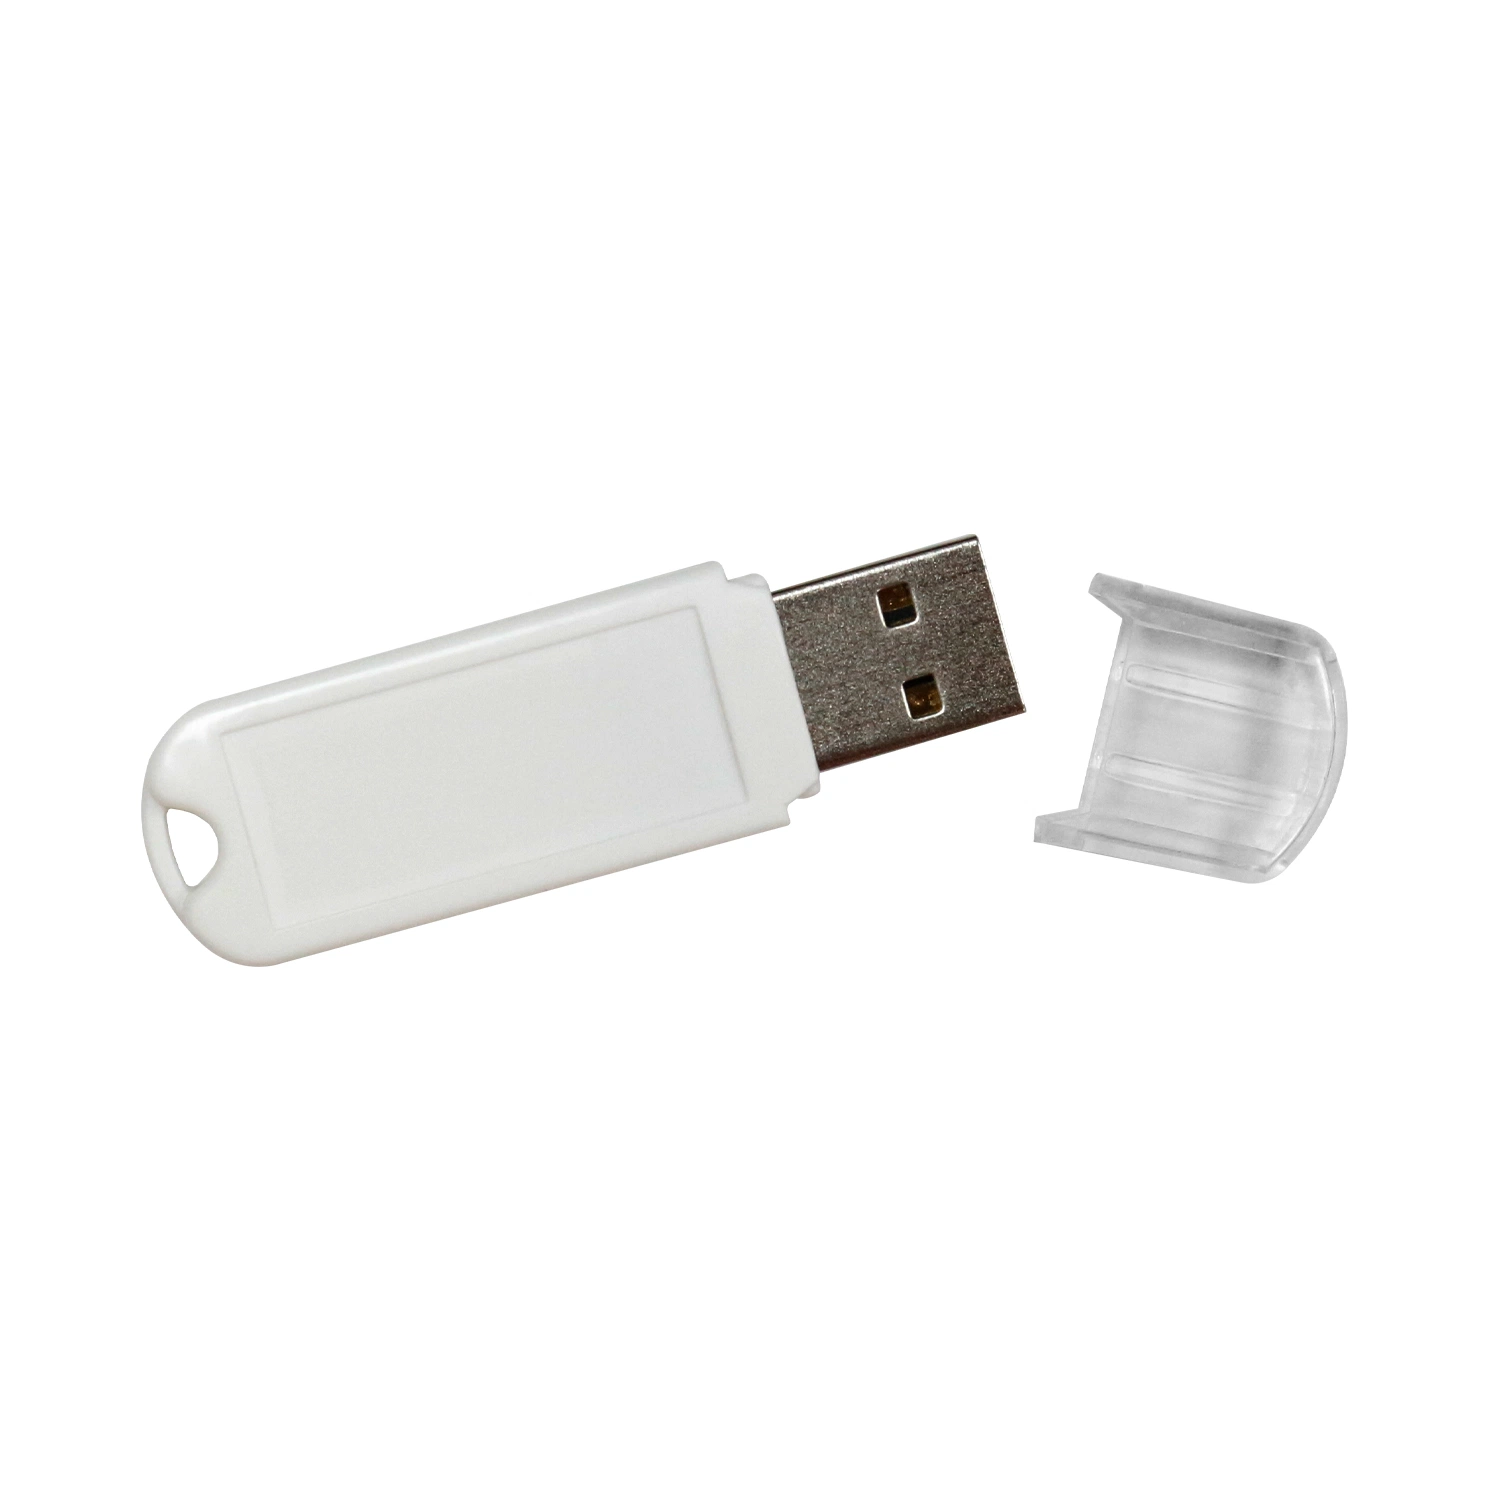 Flash promocional de la interfaz de la unidad flash USB USB2,0 3,0 de plástico colorido Unidad